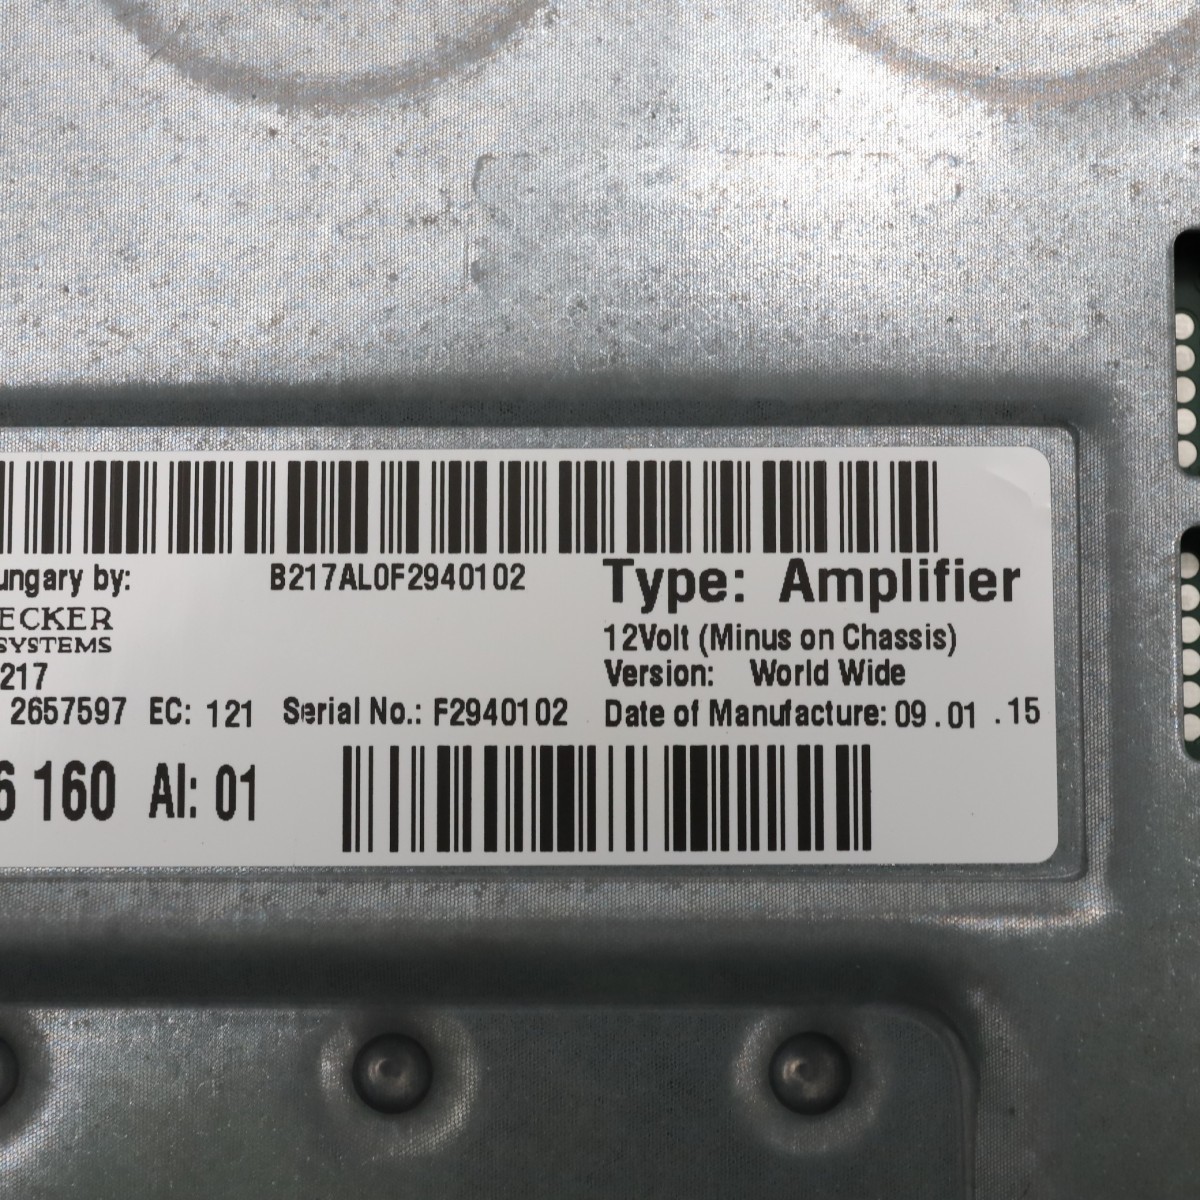 [B-14]BMW F02 LCI latter term audio amplifier harman/kardon 65129366160 F07 F10 F11 F12 F06 F13 F01 750Li YE44 used 